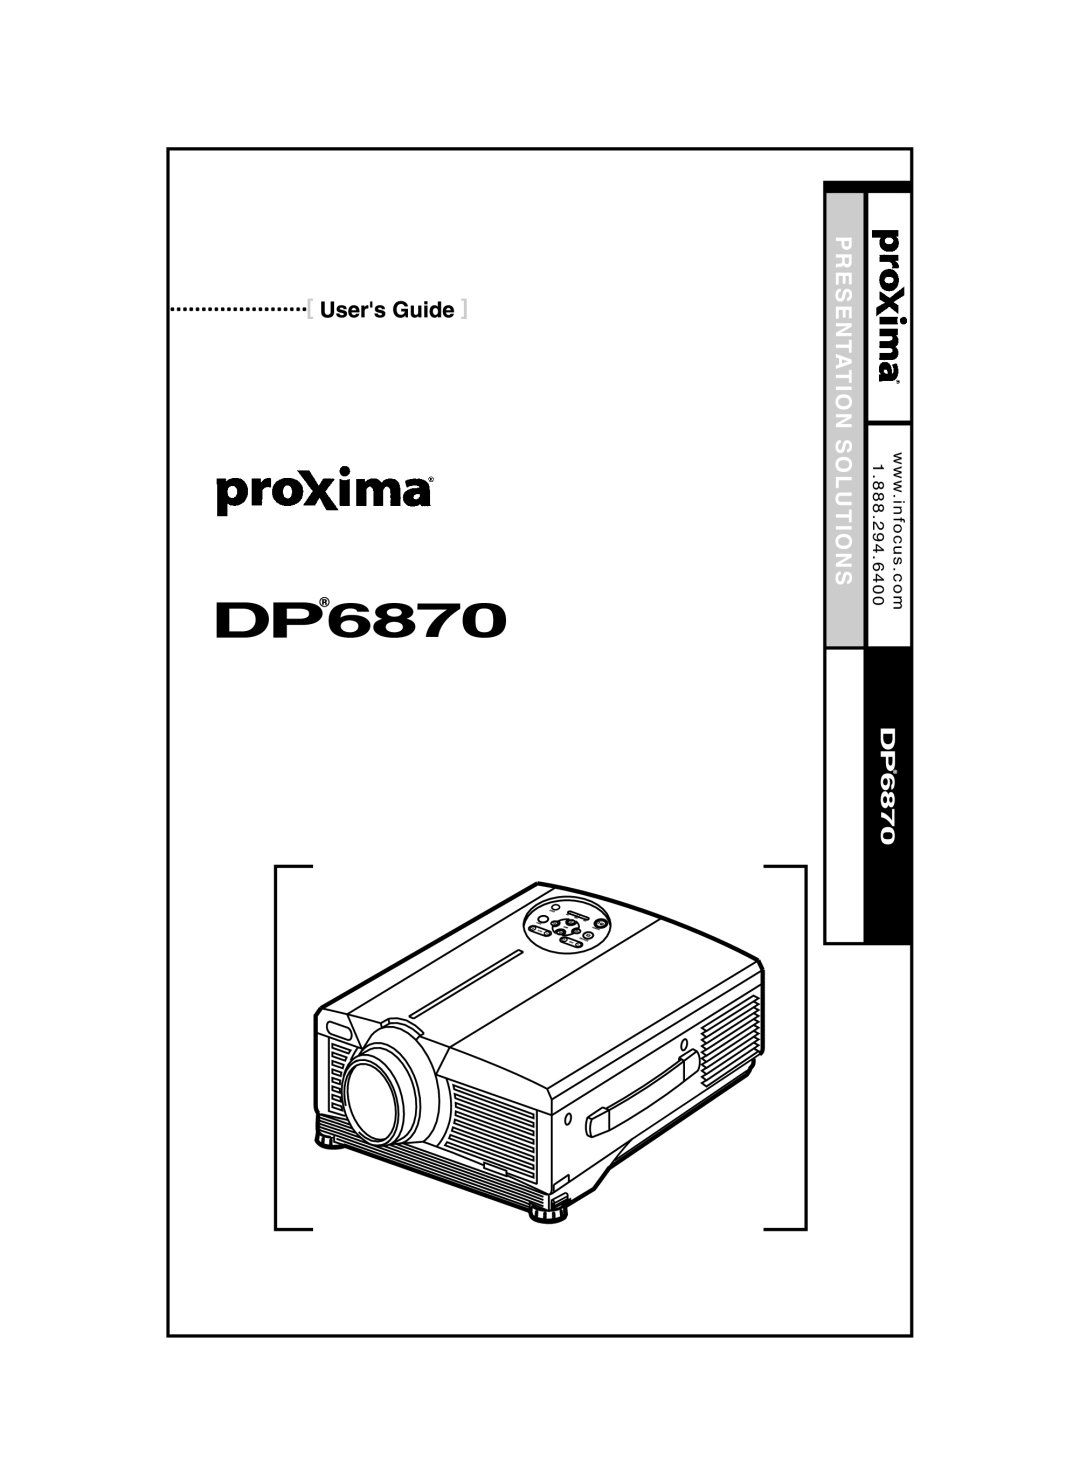 Proxima ASA DP6870 manual Presentation Solutions, Desktop Projector, wc o mw w in. focus, 1 . 8 8 8 . 2 9 4 . 6 4 